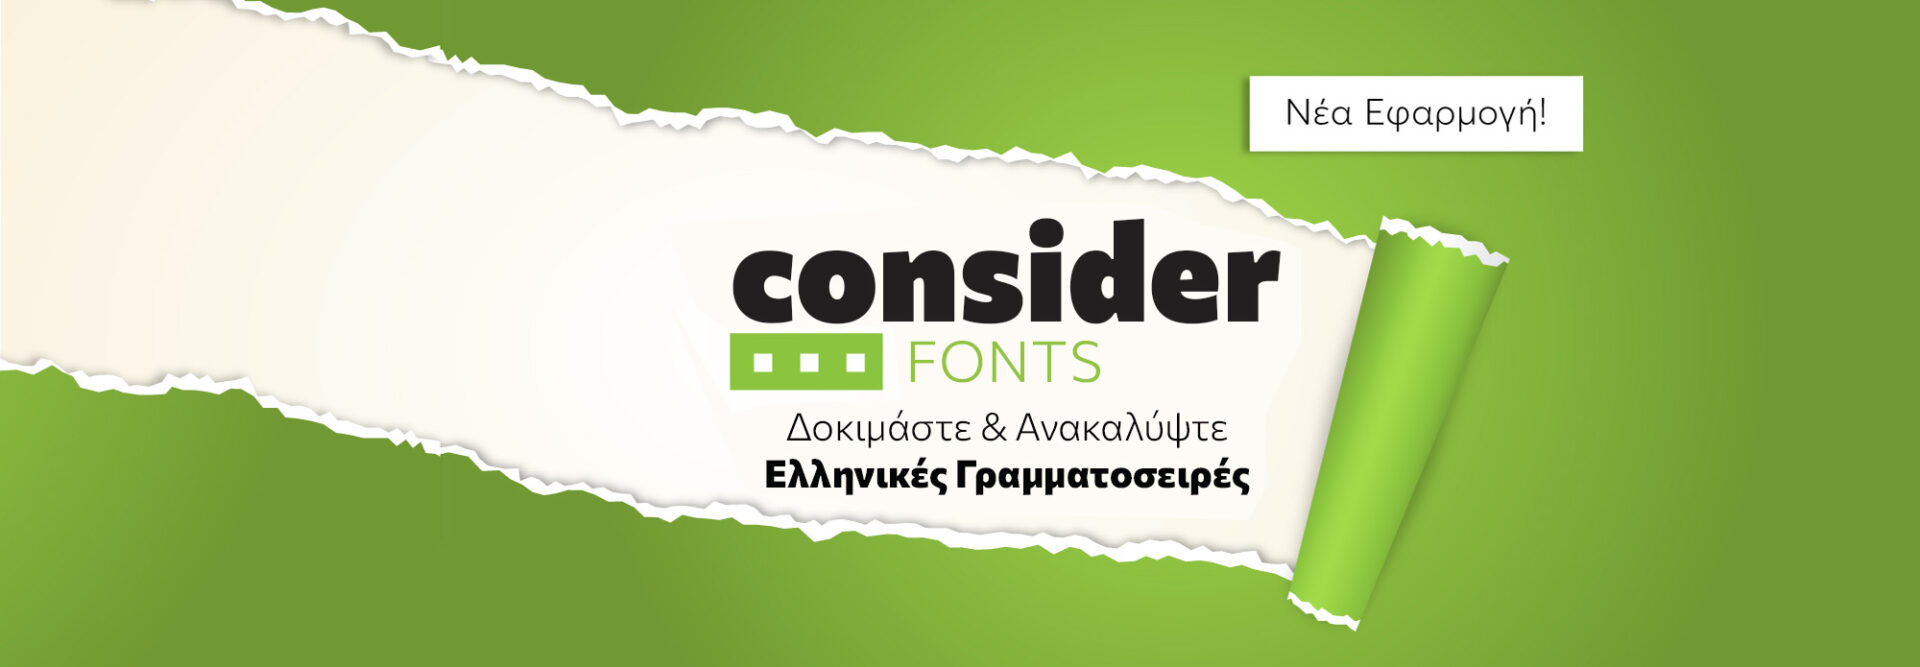 consider-fonts-slide